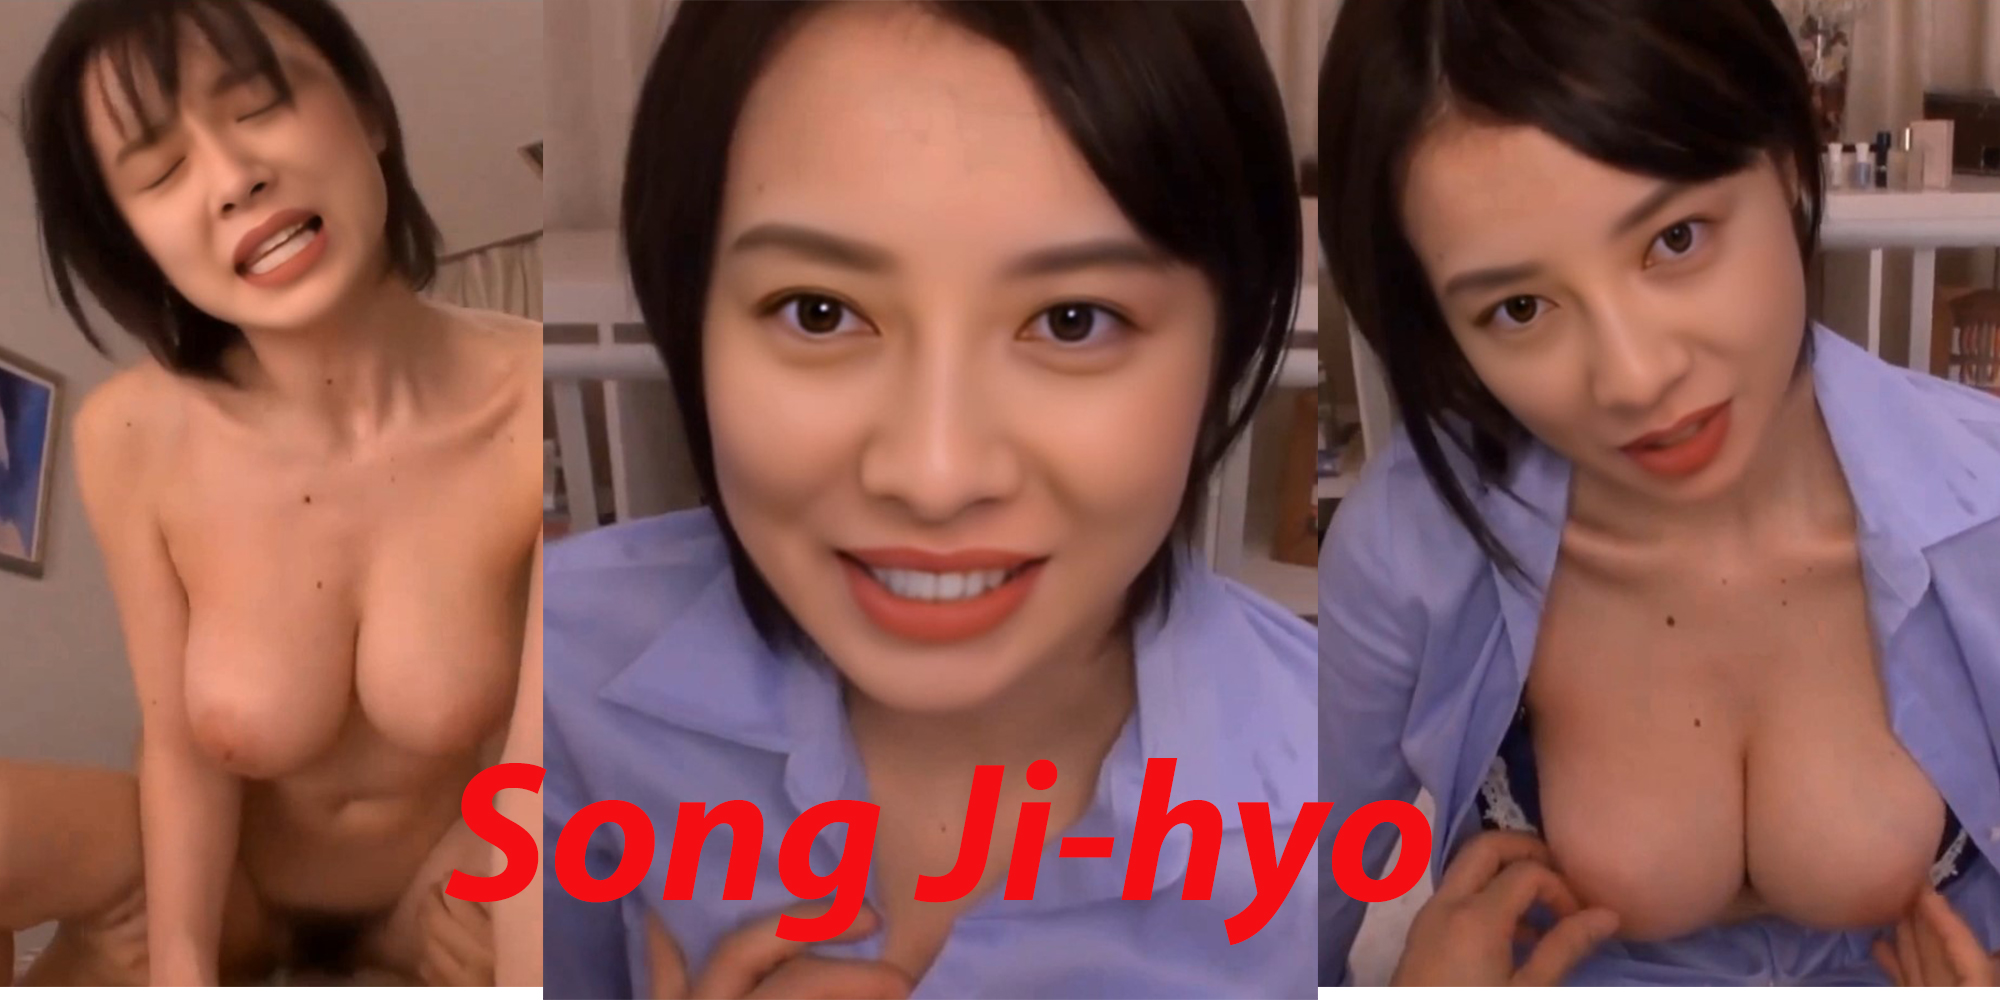 Song JiHyo gets fucked hard DeepFake Porn - MrDeepFakes